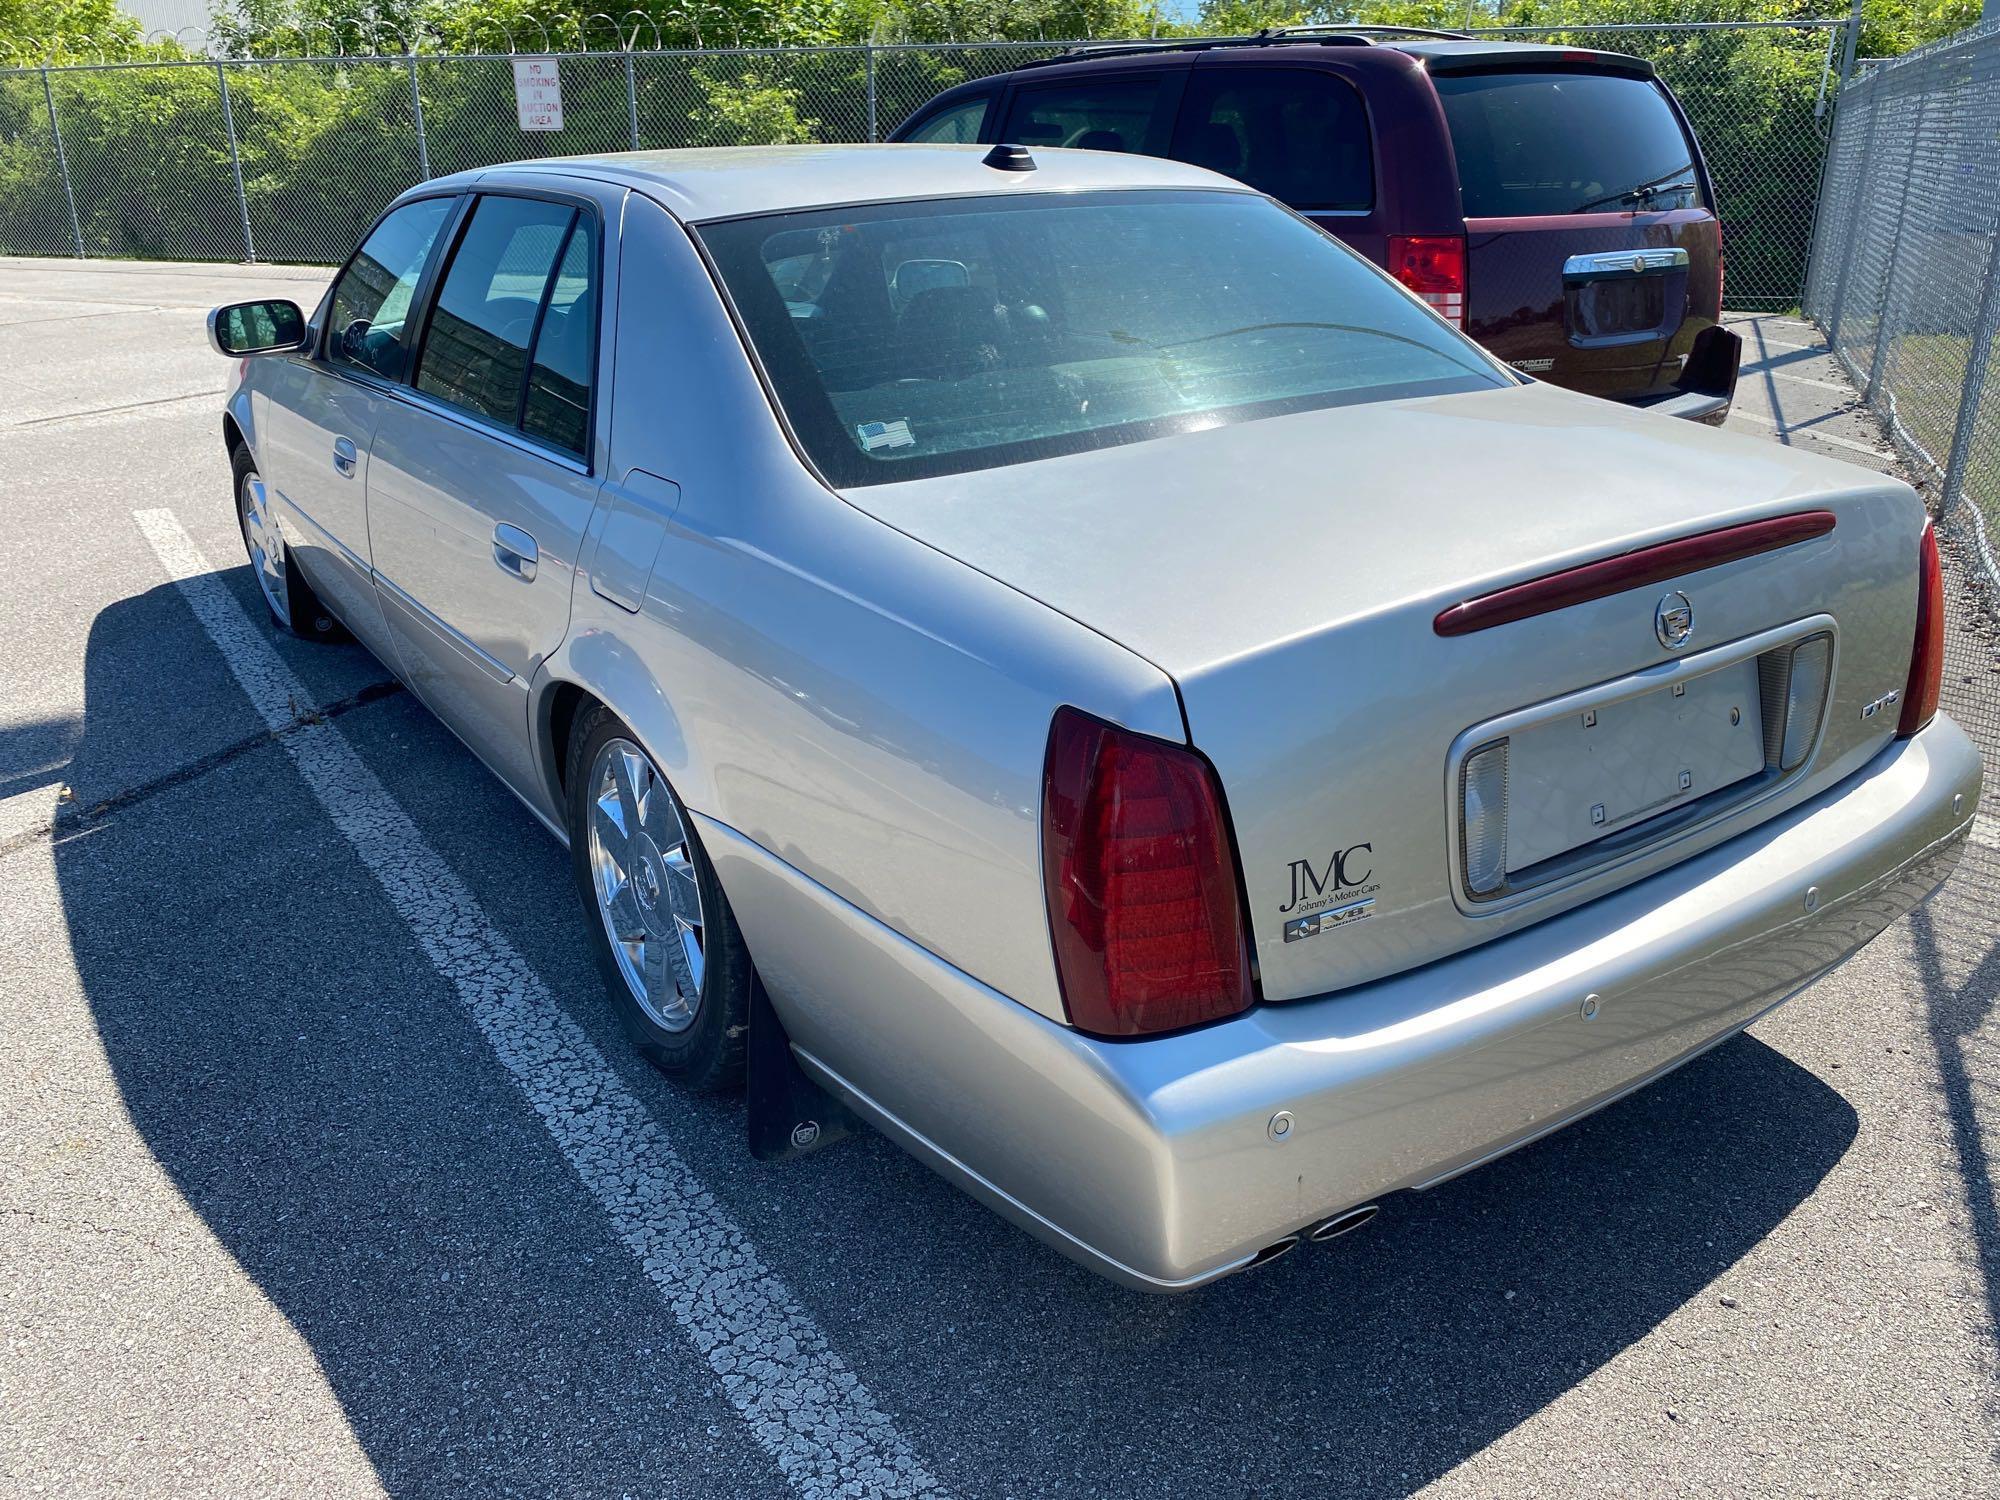 2004 Silver Cadillac DTS